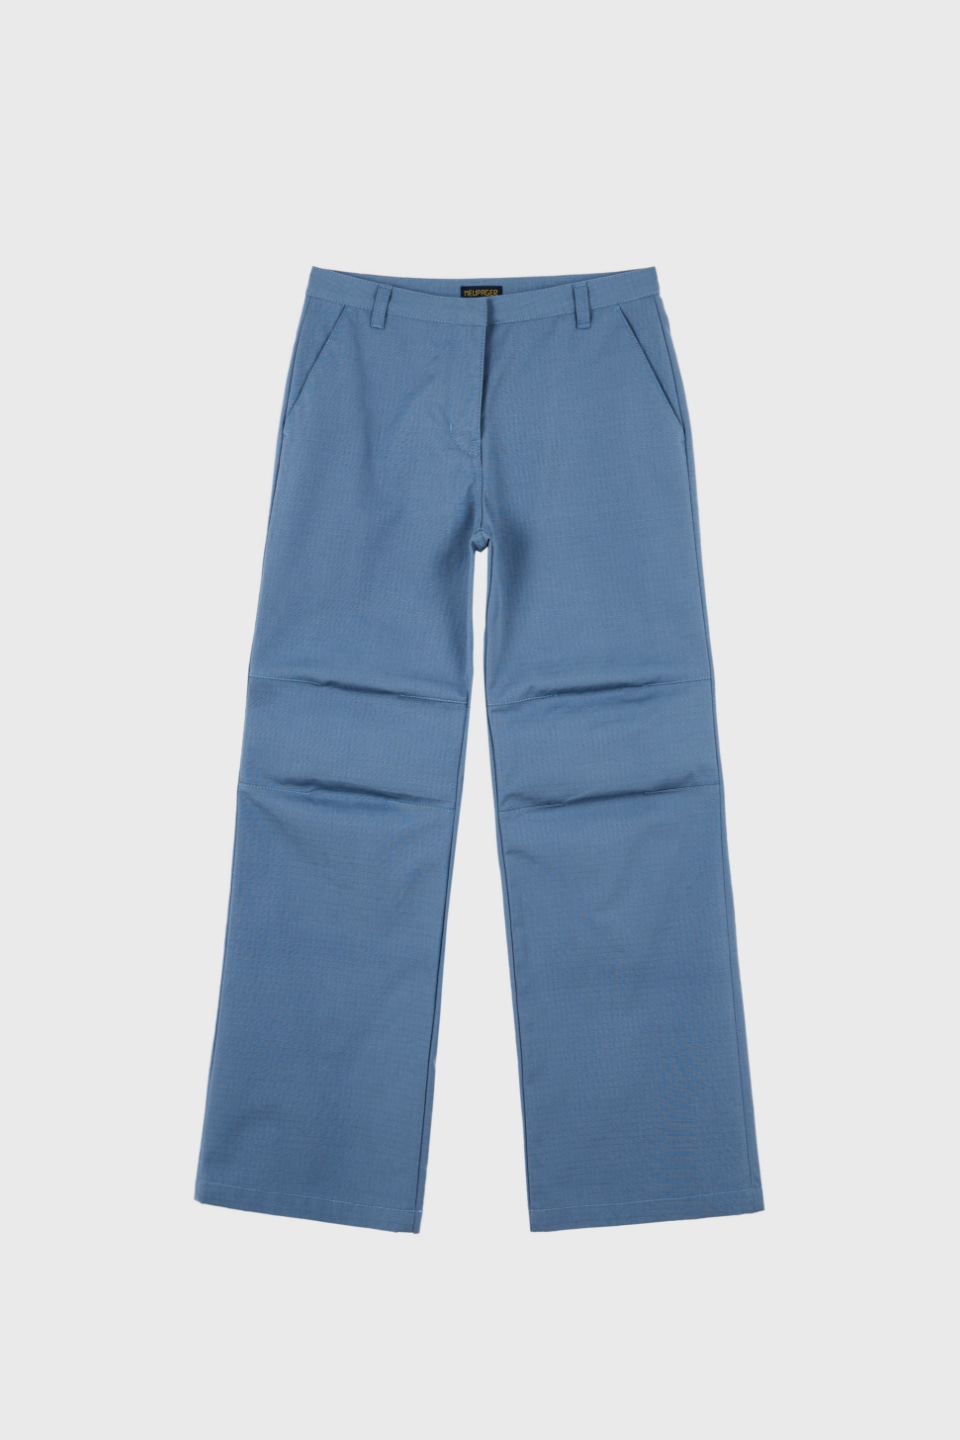 ripstop color pants - blue